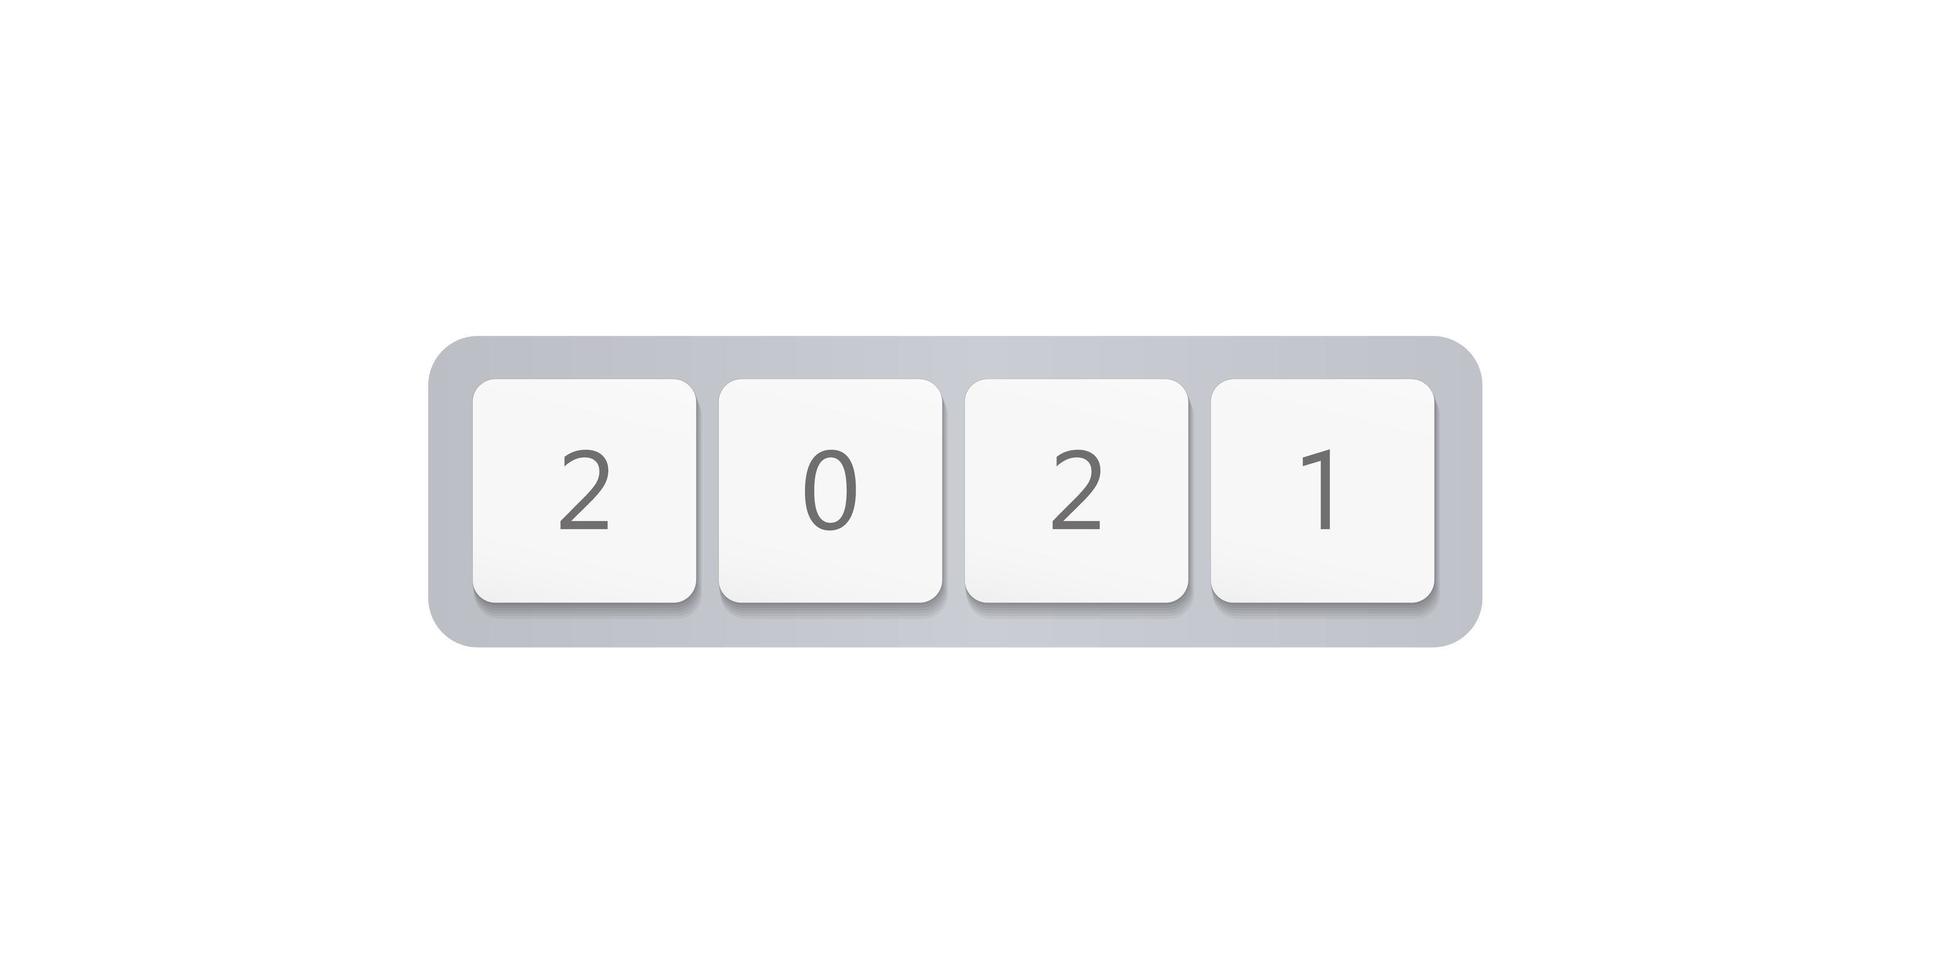 Les boutons du clavier de l'ordinateur 2021, les numéros du nouvel an, couvrent la conception minimale pour les affaires numériques et les éléments vectoriels. illustration vectorielle isolé sur fond blanc vecteur